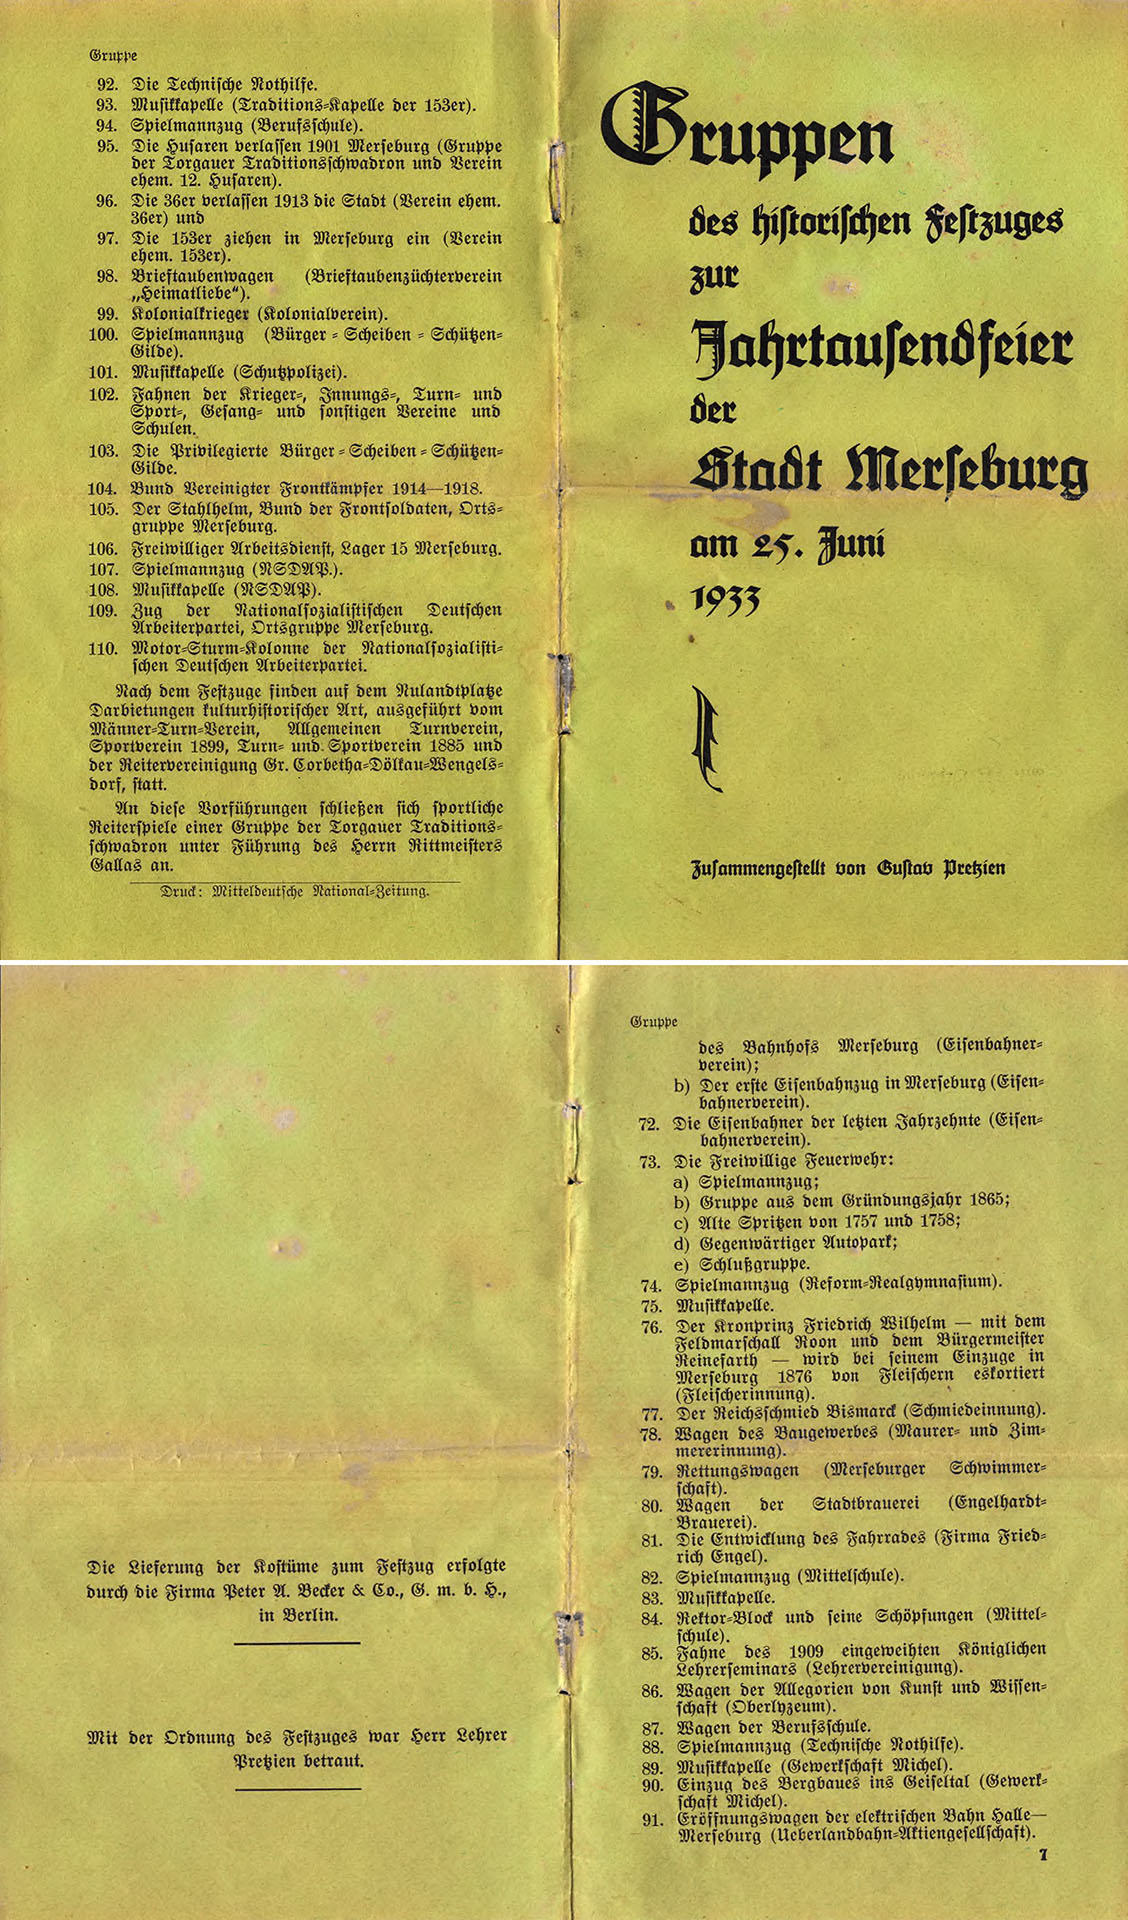 Gruppen des historischen Festzuges zur Jahrtausendfeier der Stadt Merseburg am 25. Juni 1933 - Pretzien, Gustav